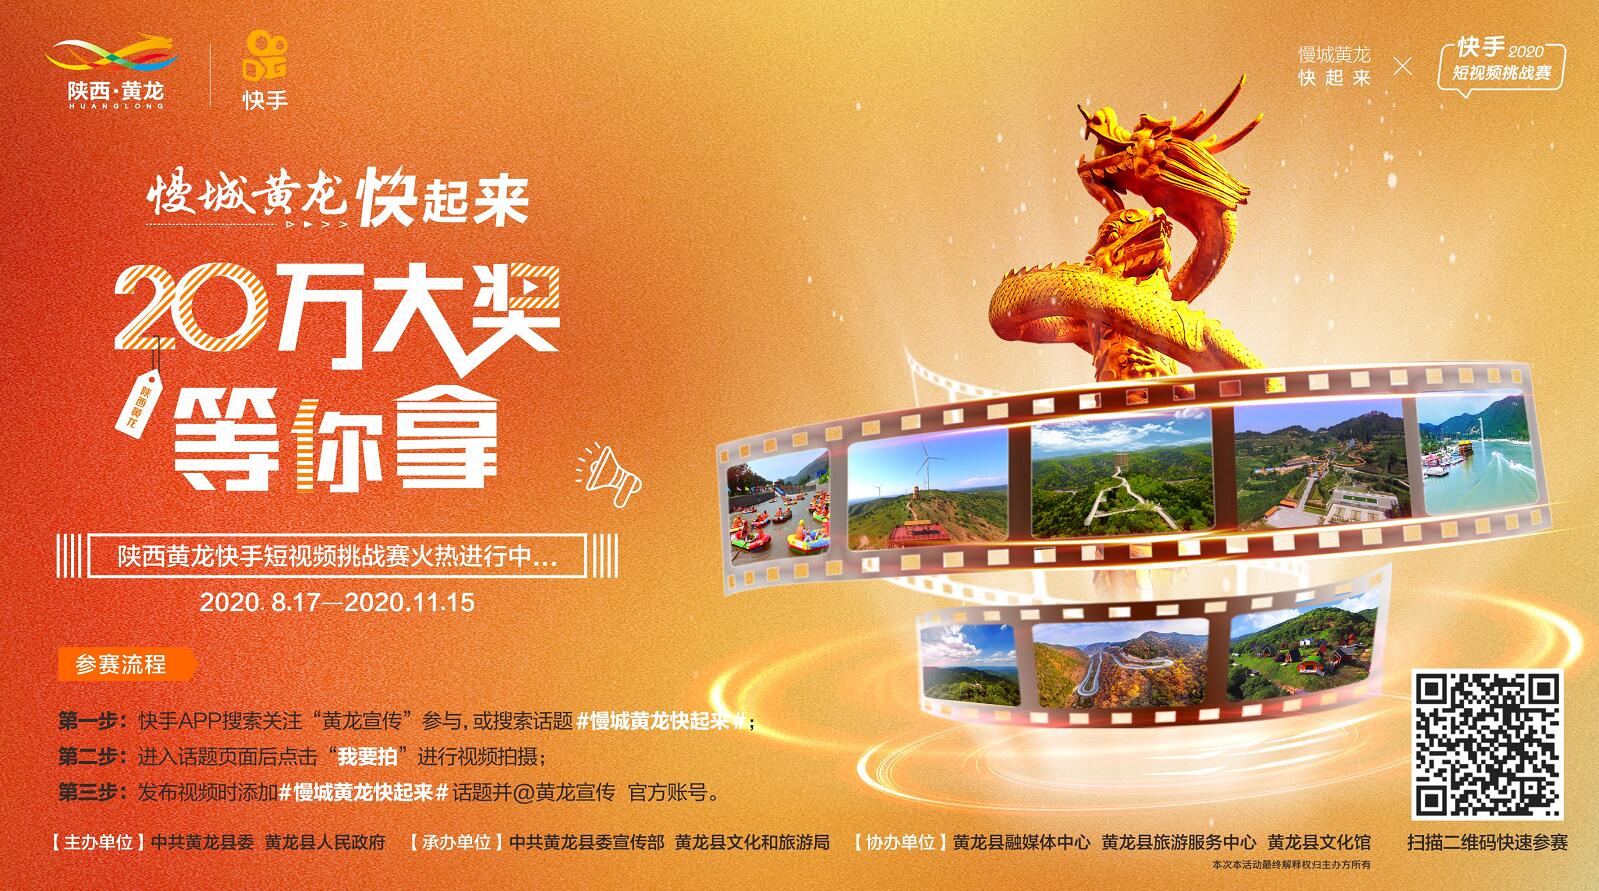 陕西黄龙城市旅游品牌整合推广媒体发布报告